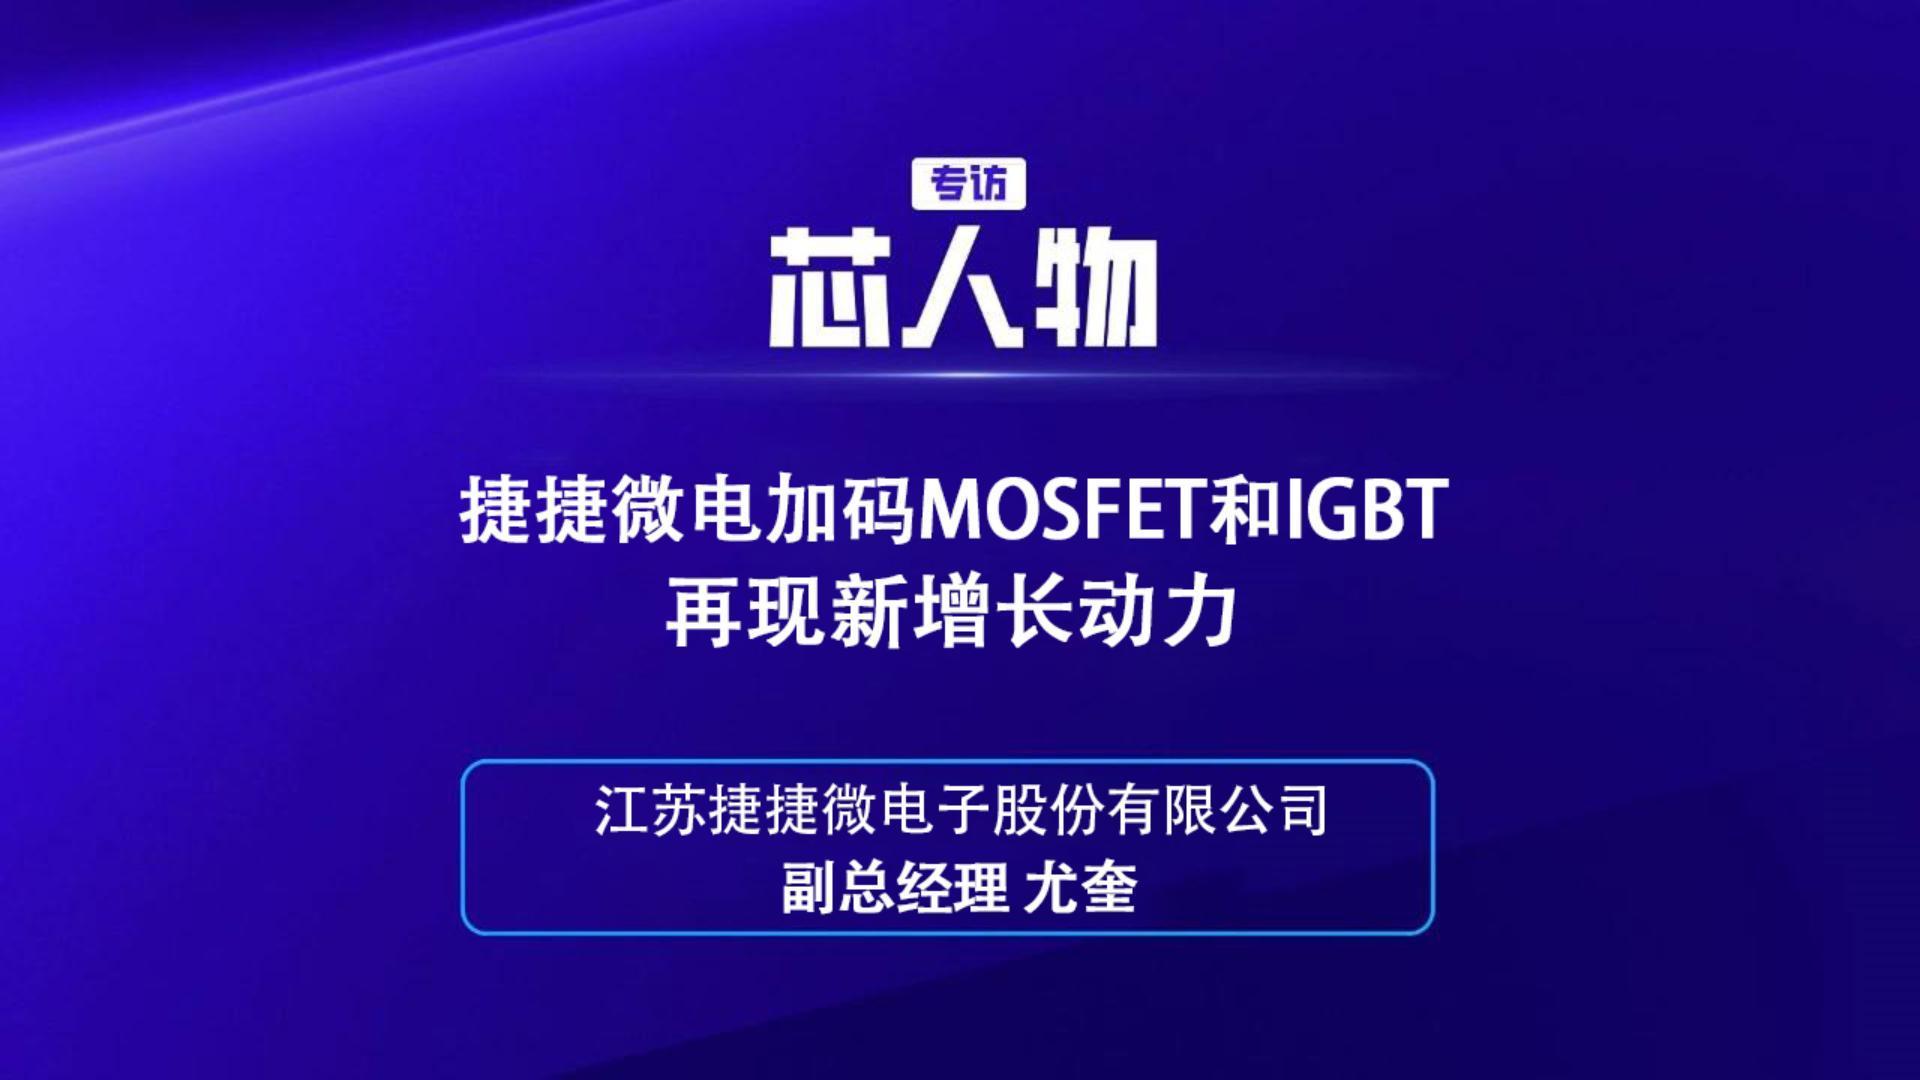 江苏捷捷微电子股份有限公司副总经理 尤奎：捷捷微电加码MOSFET和IGBT再现新增长动力